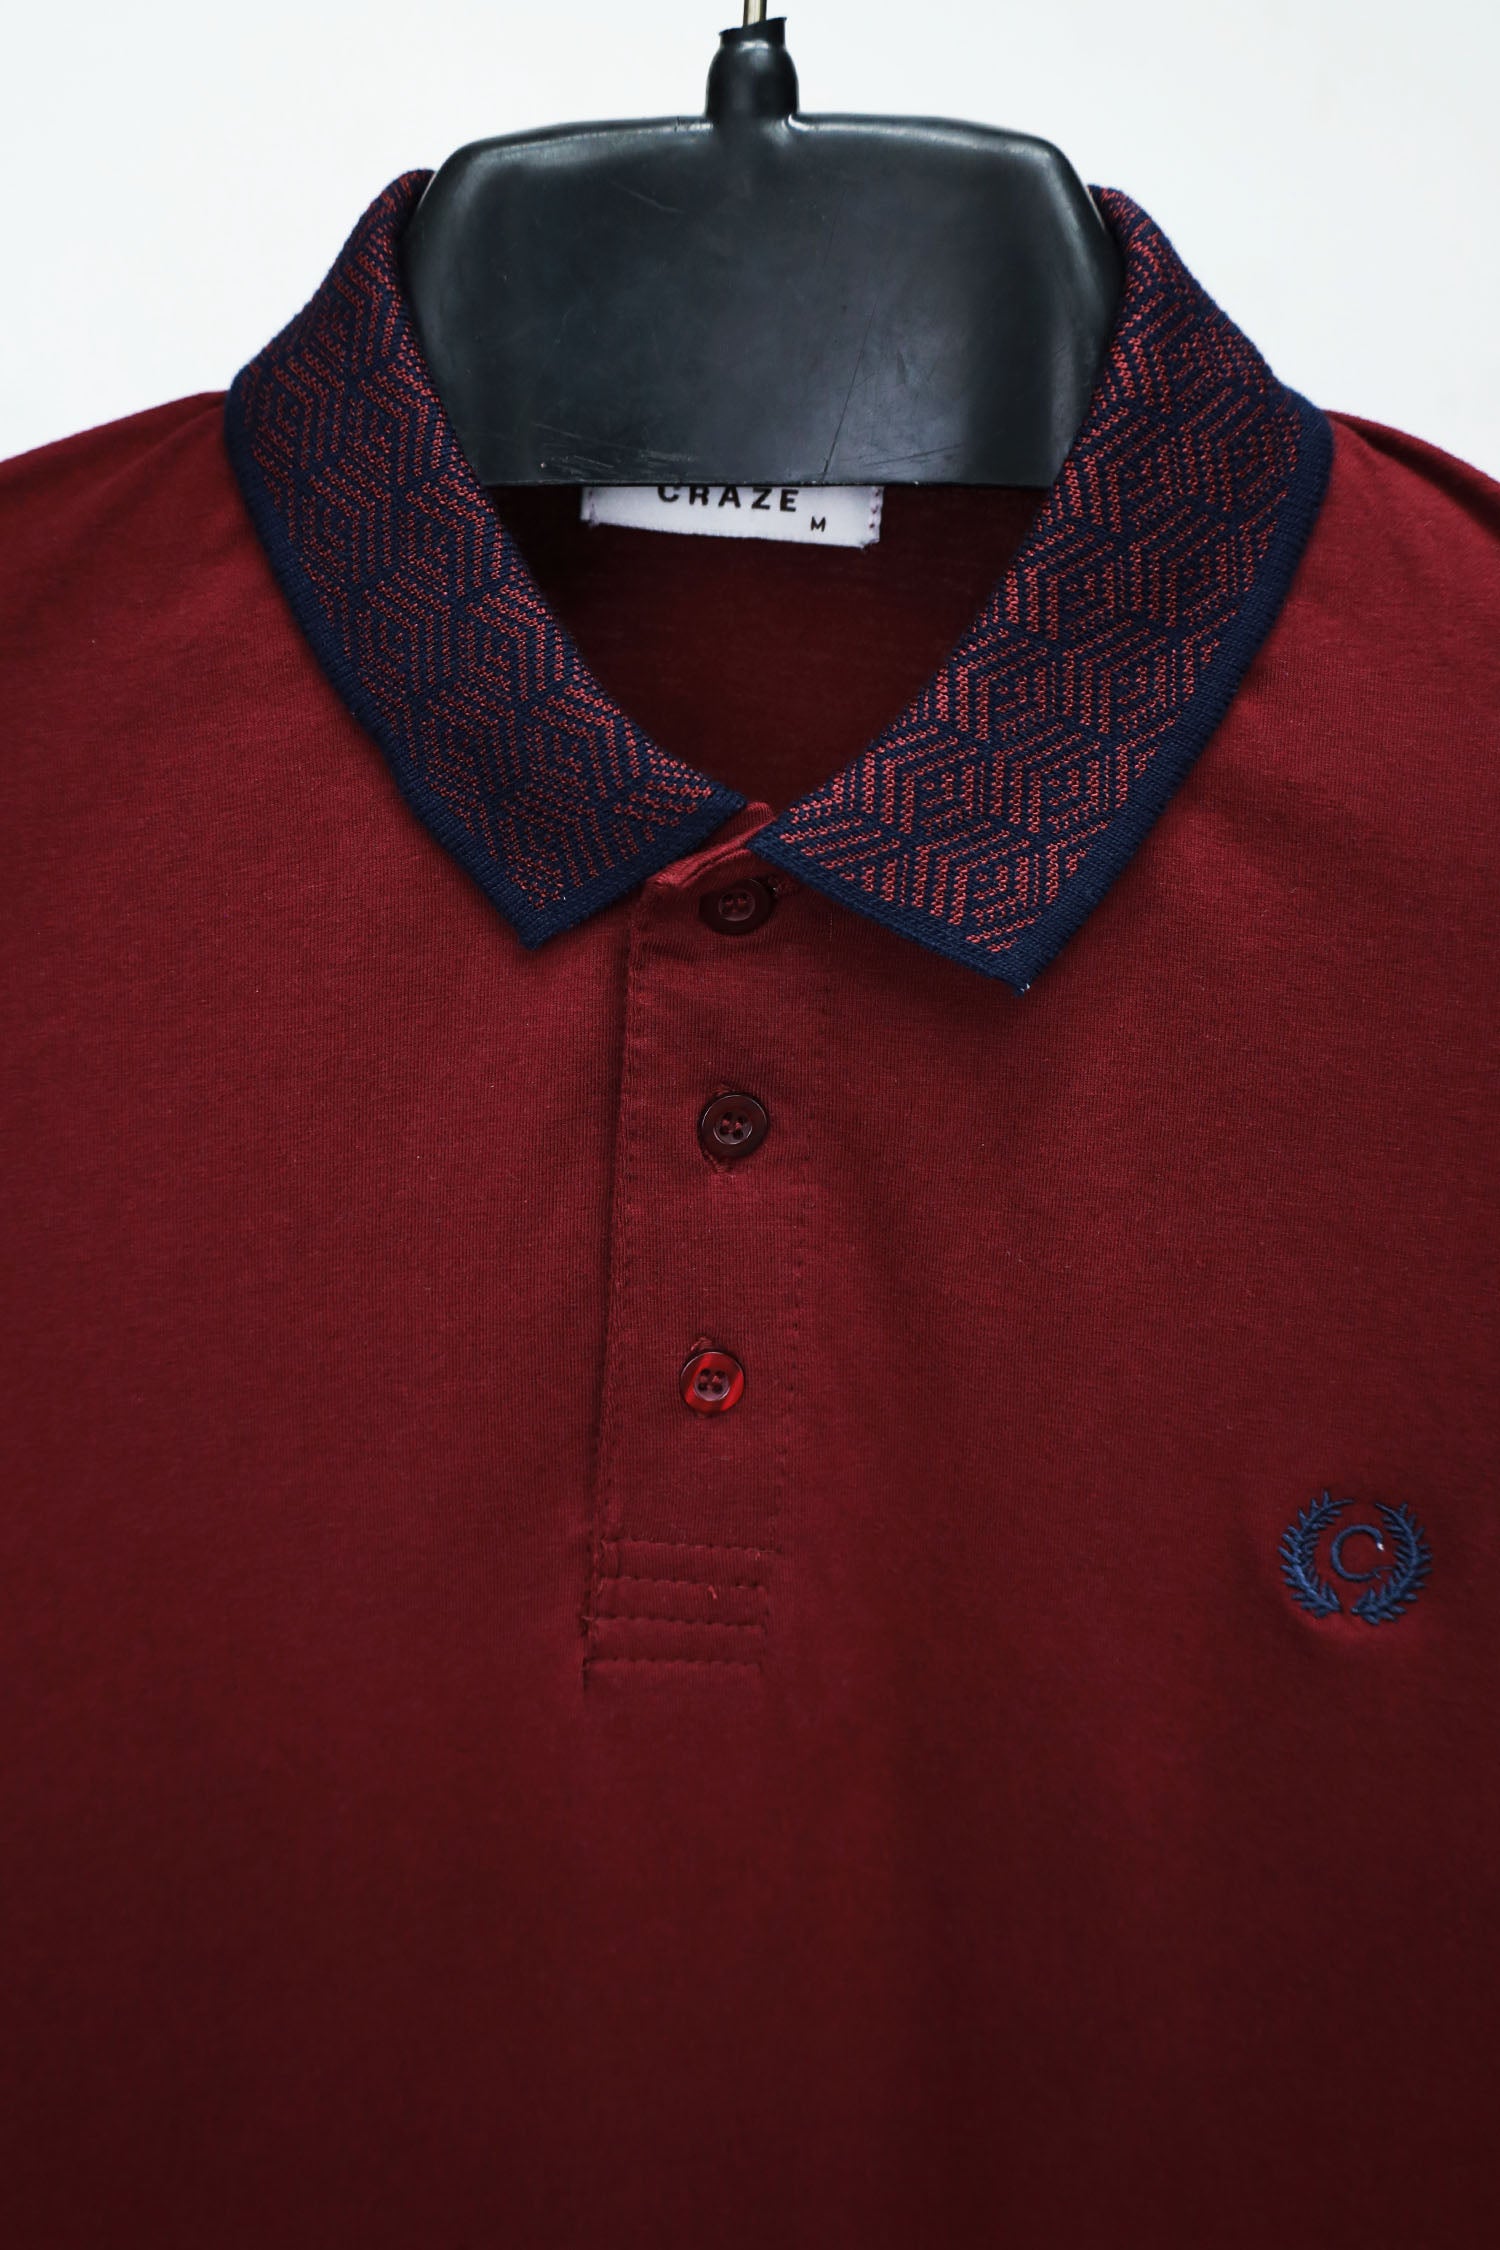 Craze Front Logo Design Cropped Collar Polo Shirt